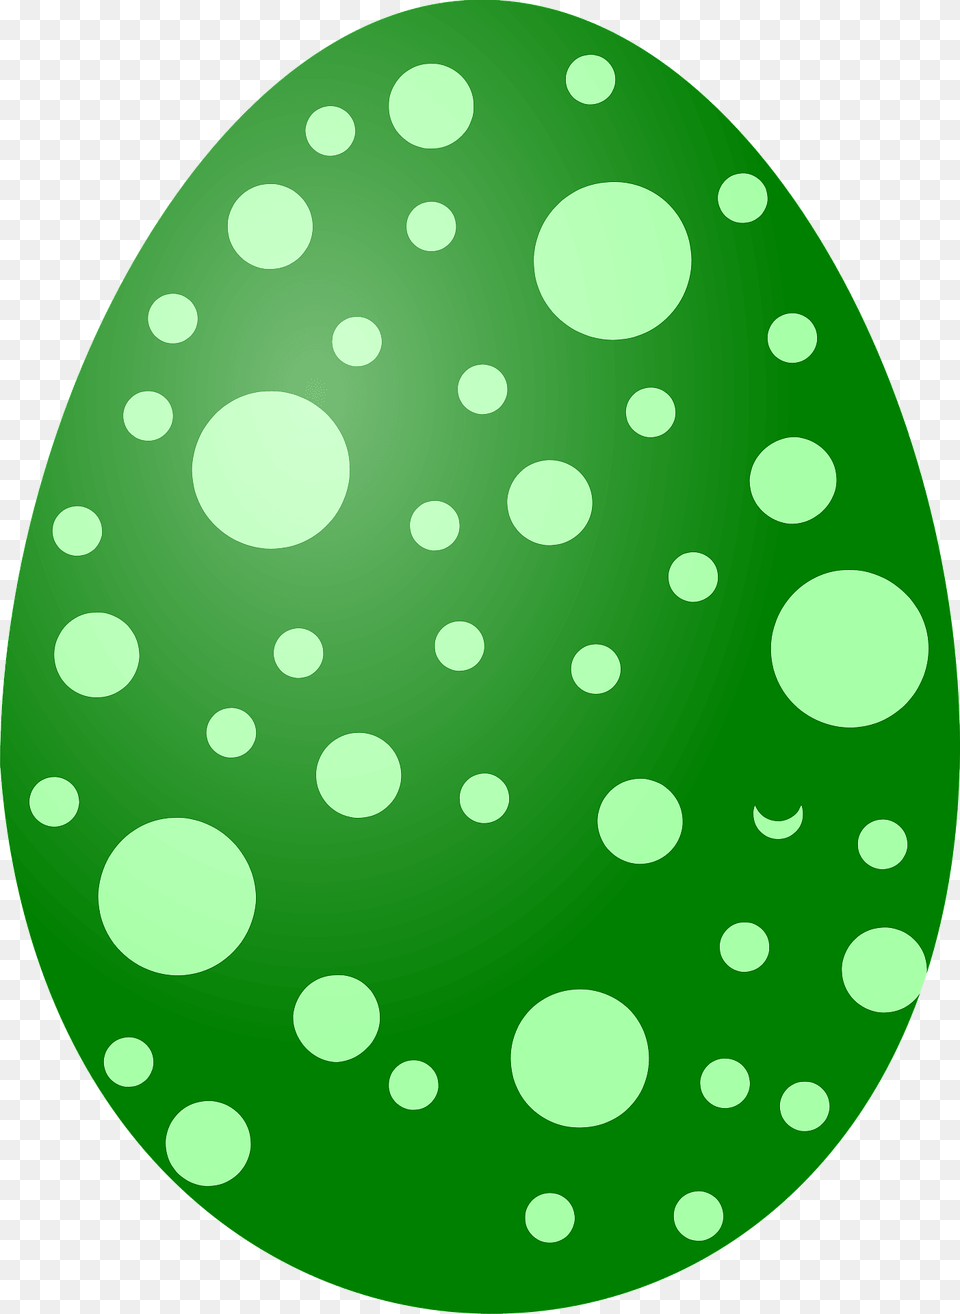 Green Polka Dot Easter Egg Clipart, Easter Egg, Food, Disk Free Transparent Png